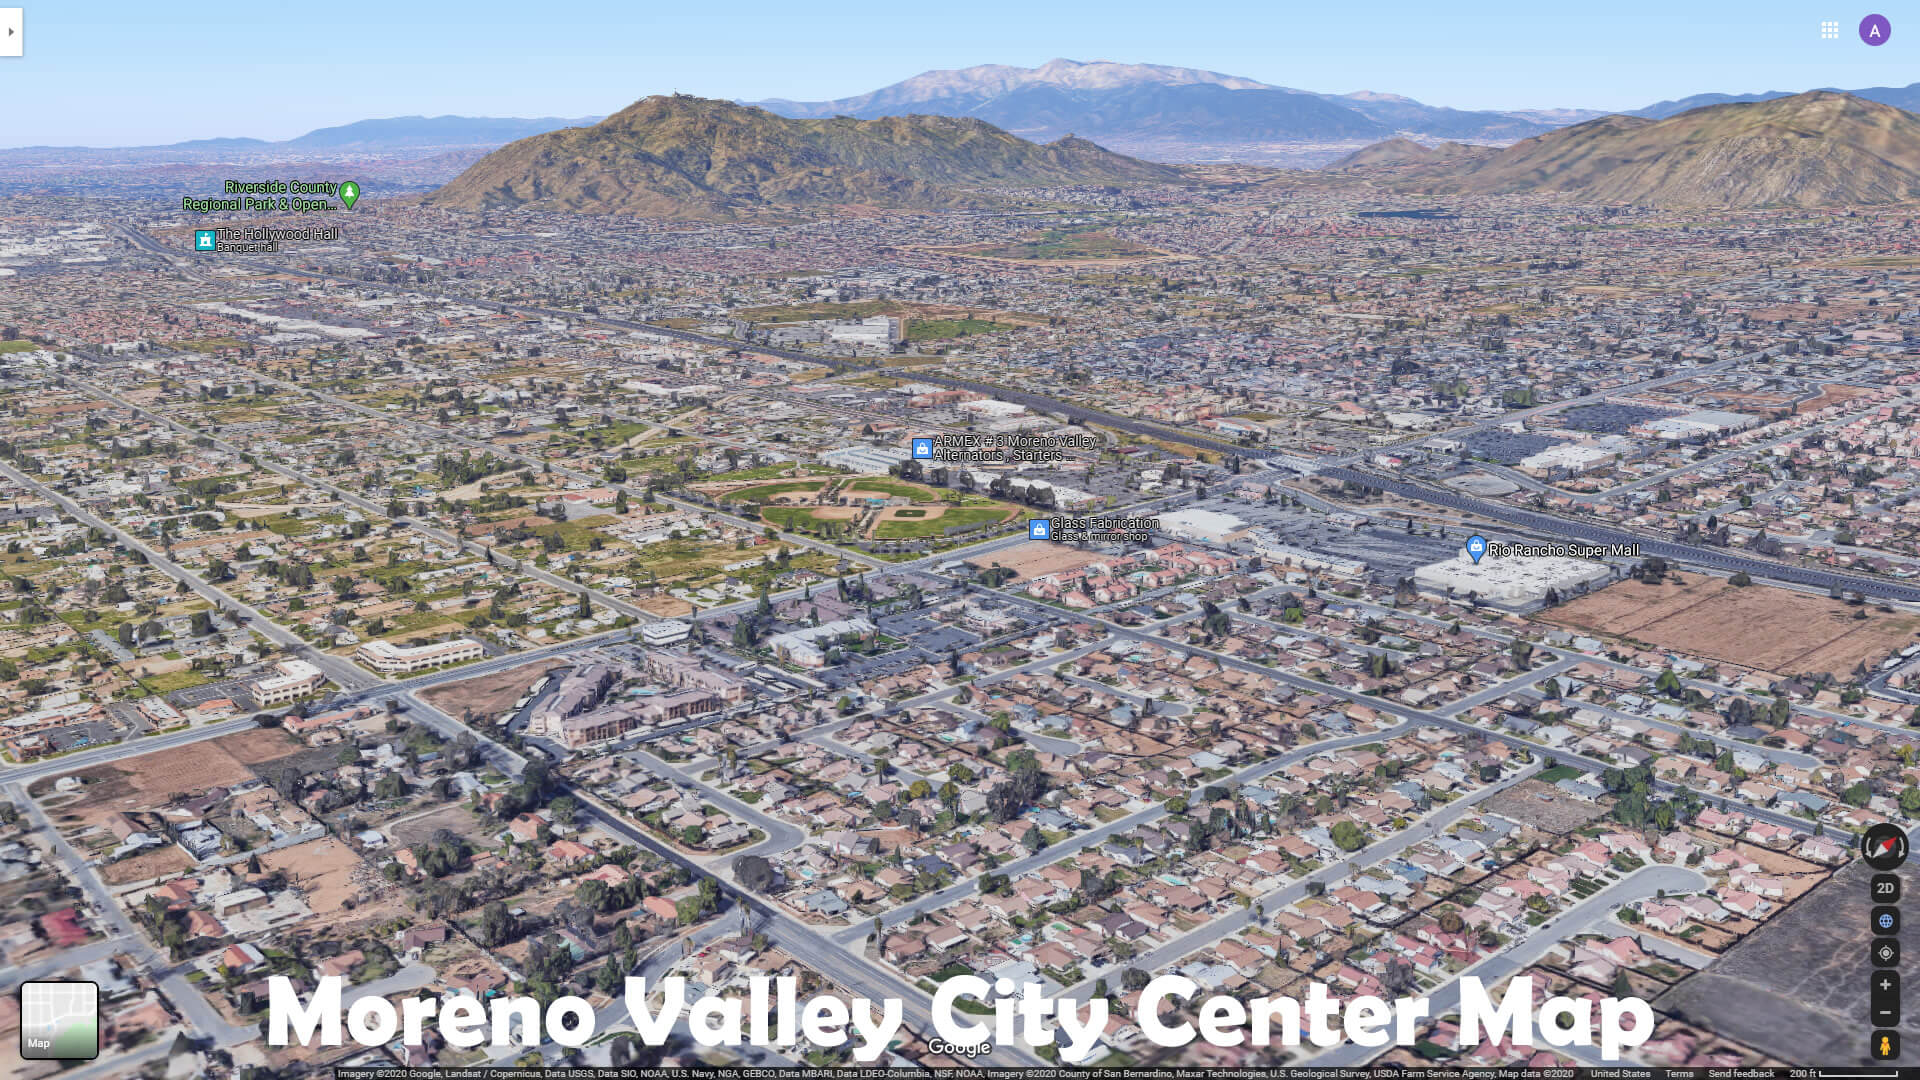 Moreno Valley City Center Map